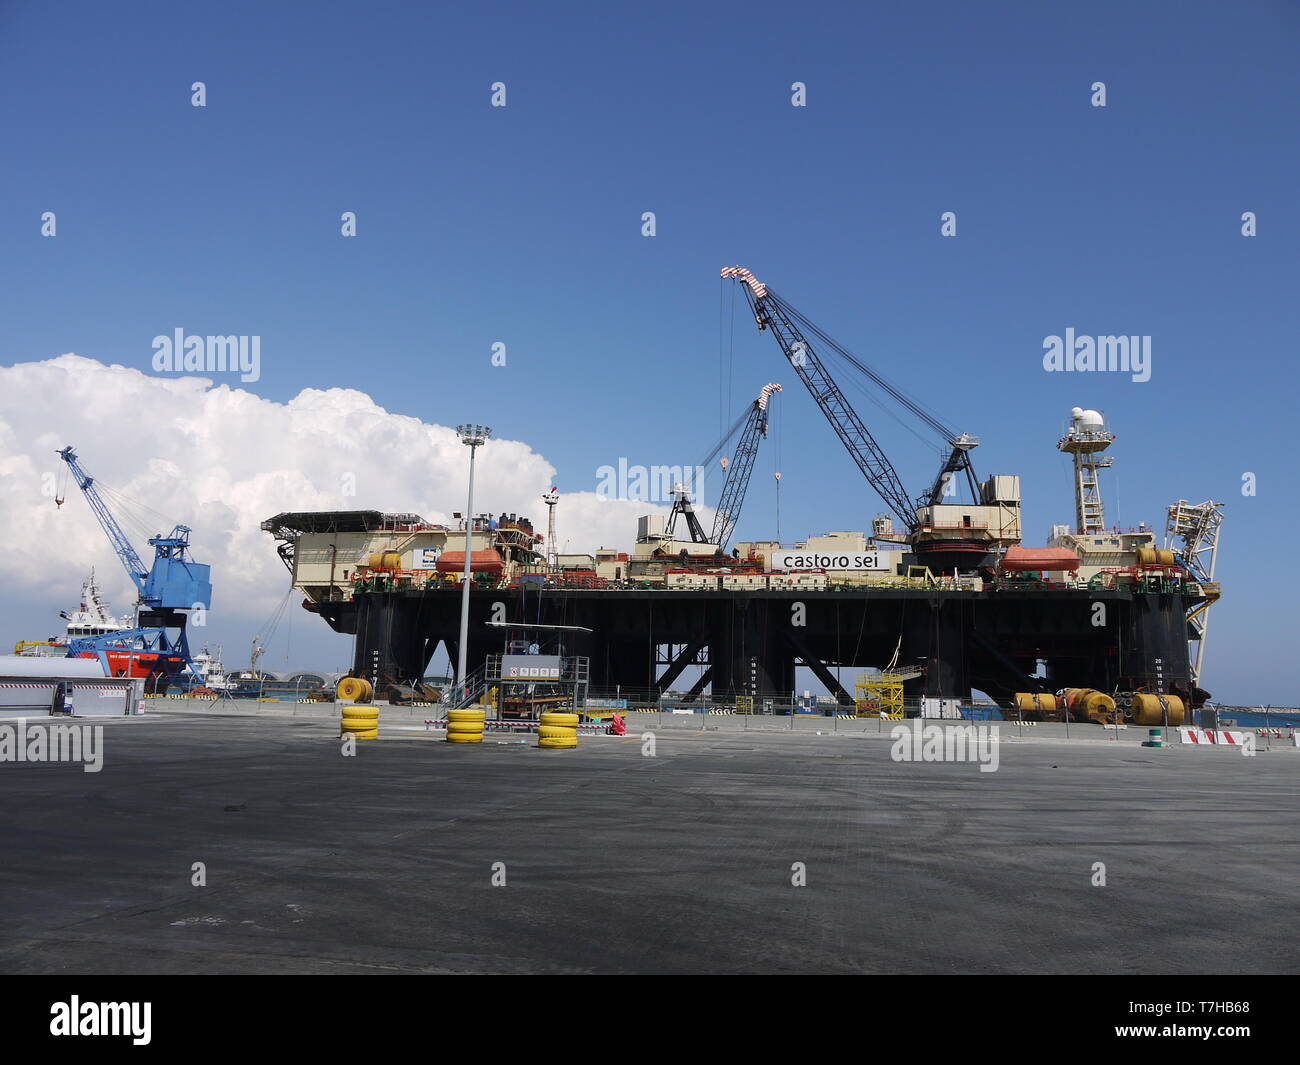 Il Castoro Sei nel porto di Limassol (Cipro) è una barca dedicata a costruire off shore linee di tubi per olio e gas Foto Stock